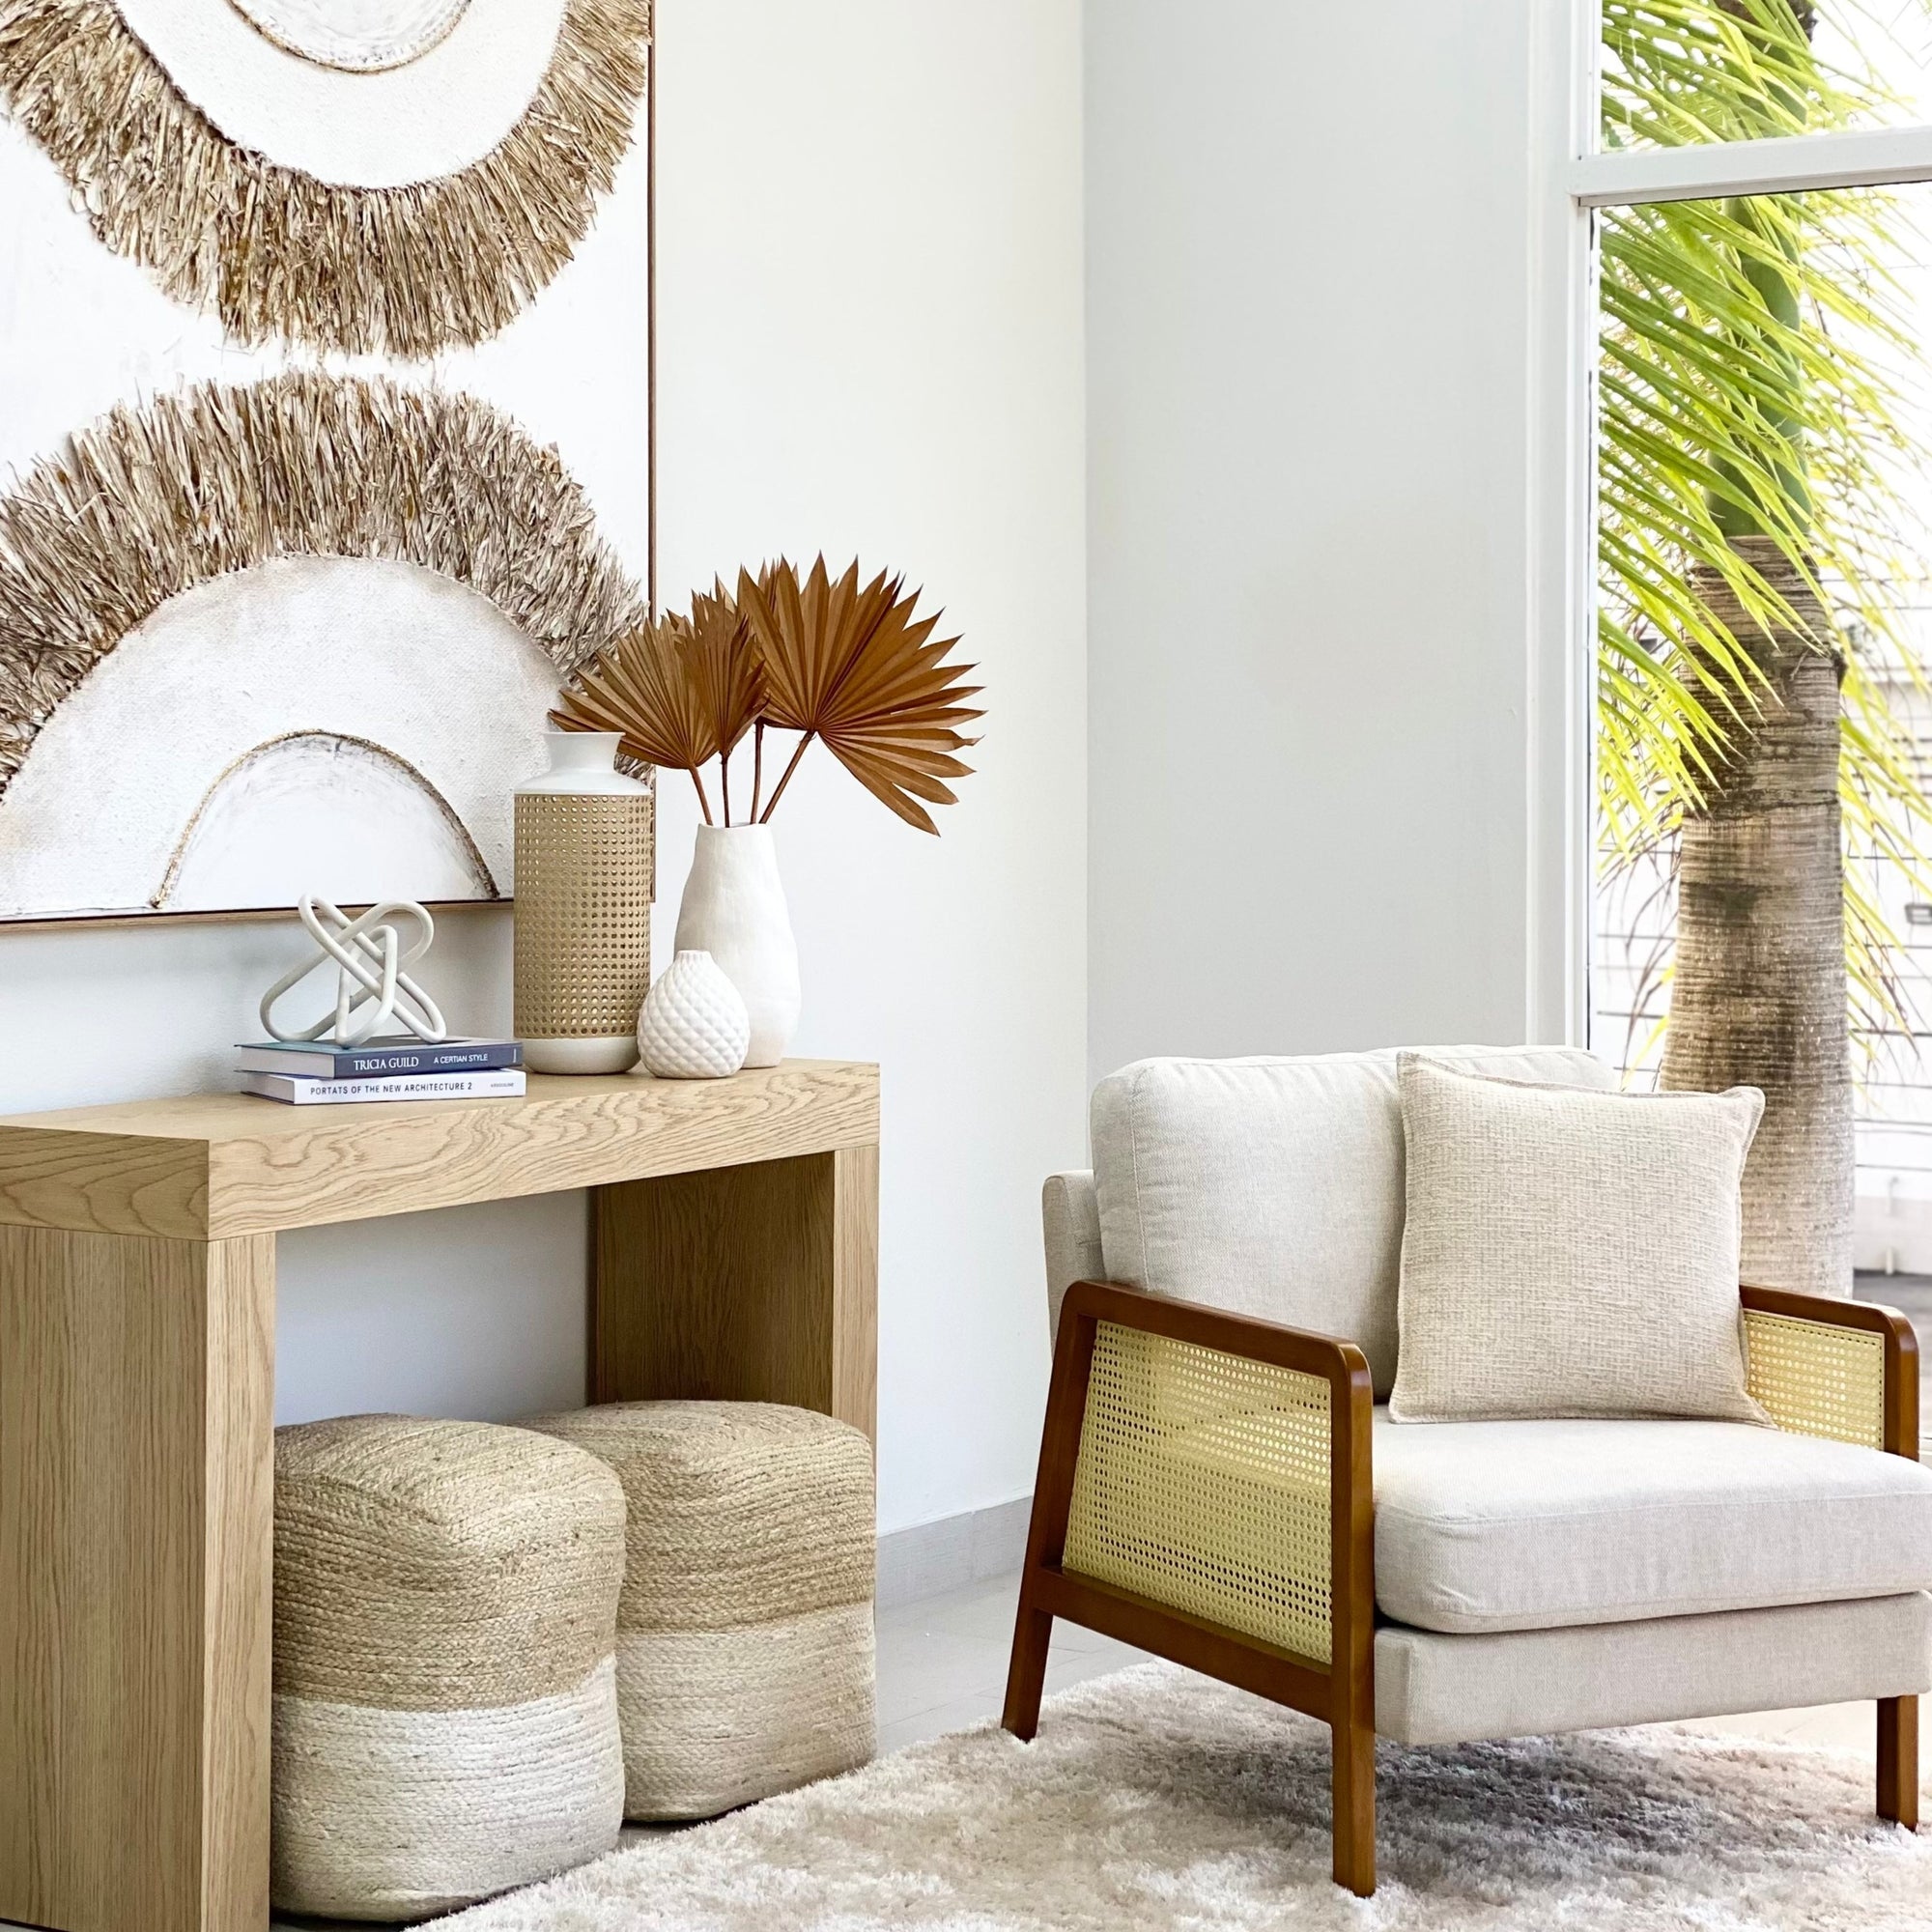 Mesa Recibidor - $ 1,990  Hallway table decor, Home decor crate, House  interior decor